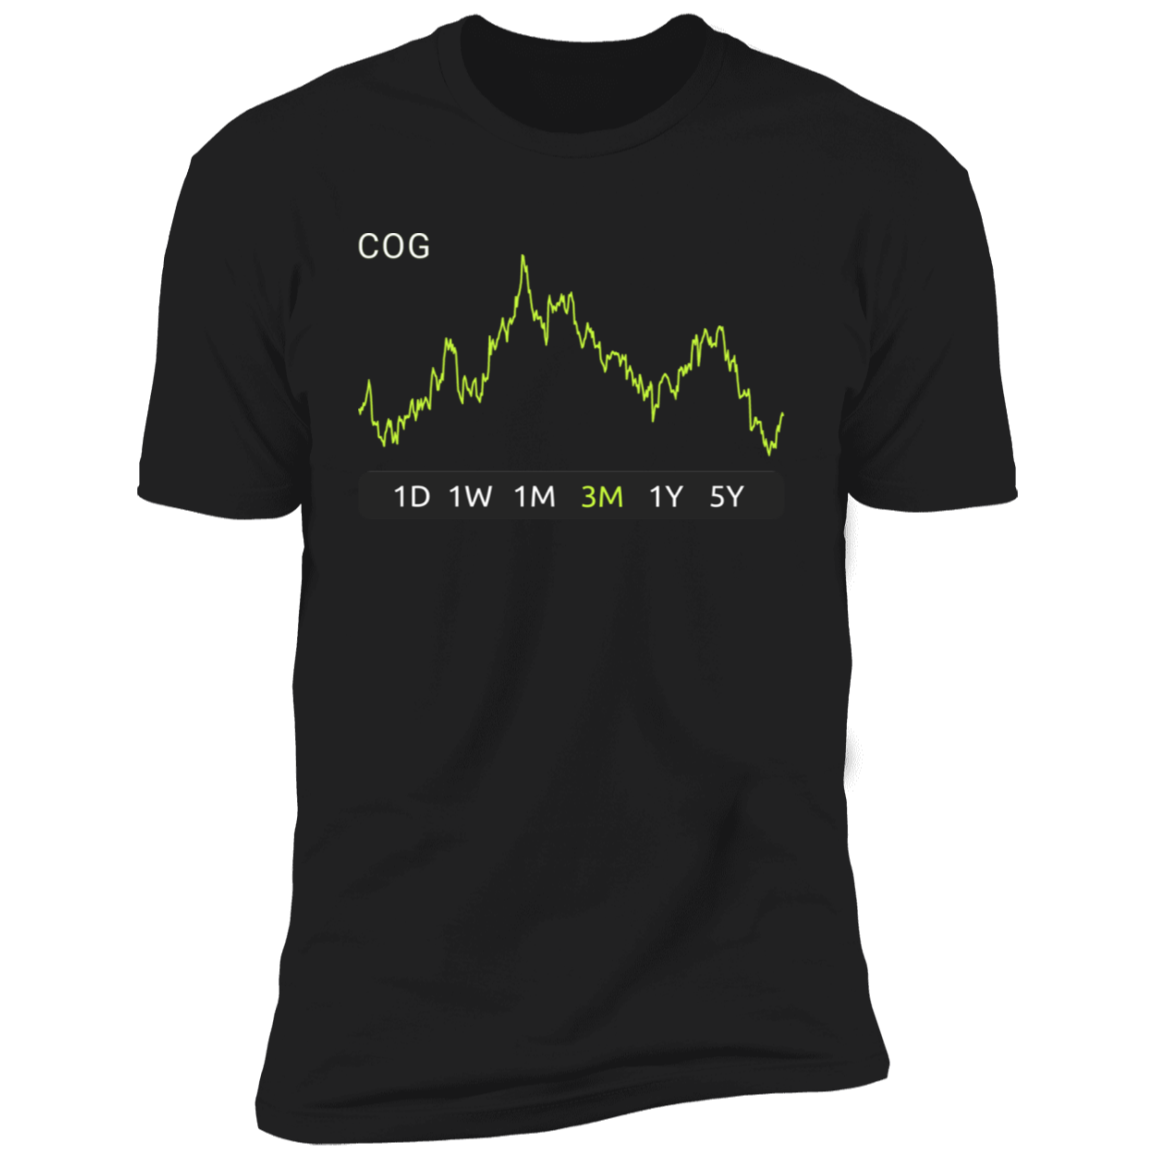 COG Stock 3m Premium T-Shirt